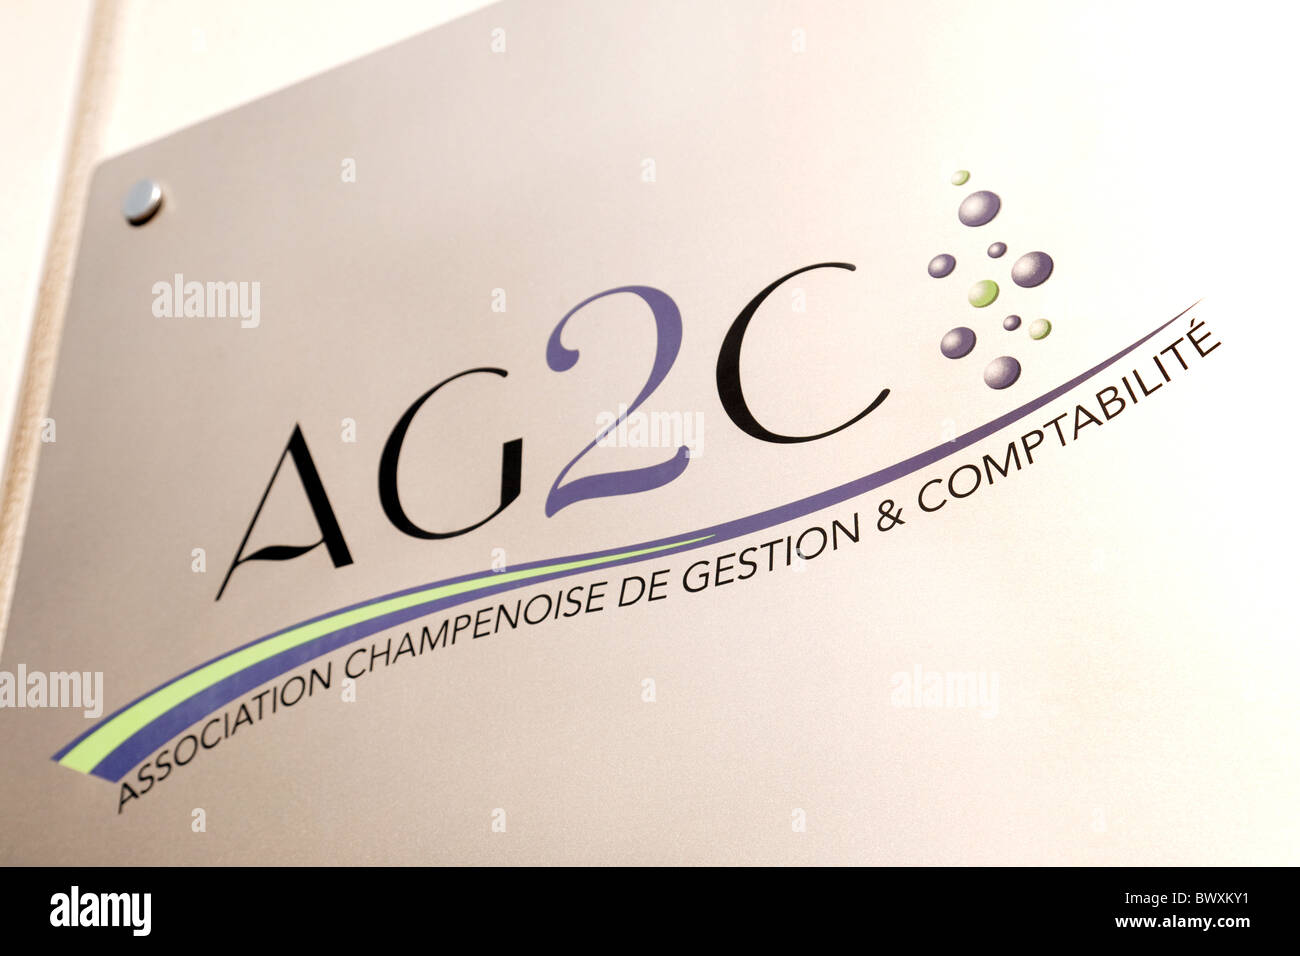 Symbol des AG2C - Vereins Champenoise de Gestation et Comptabilite der Champagner-Verband der Verwaltung und Buchhaltung Stockfoto